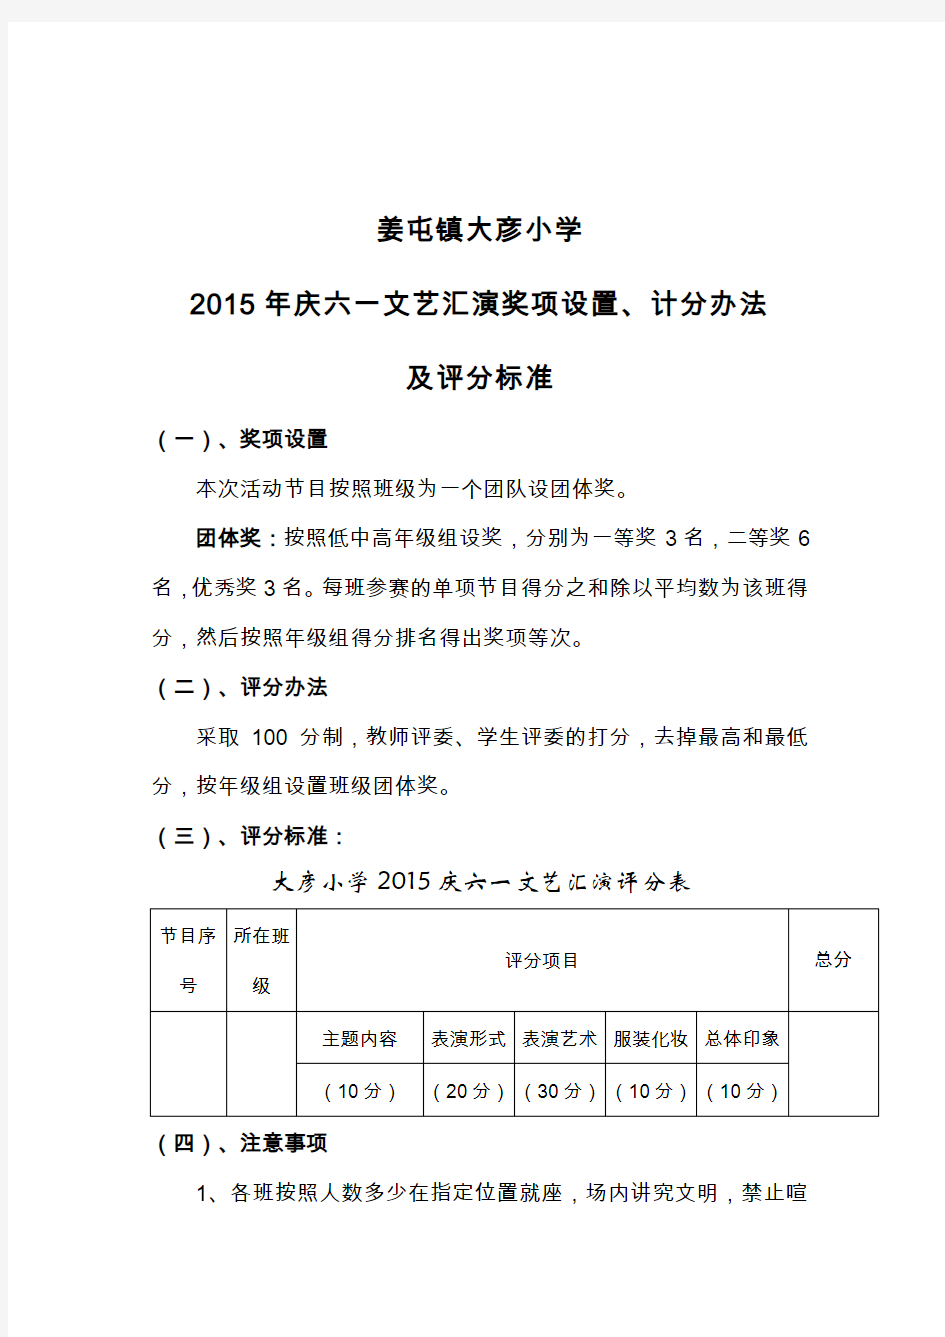 姜屯镇大彦小学2015年庆六一文艺汇演奖项设置、计分办法